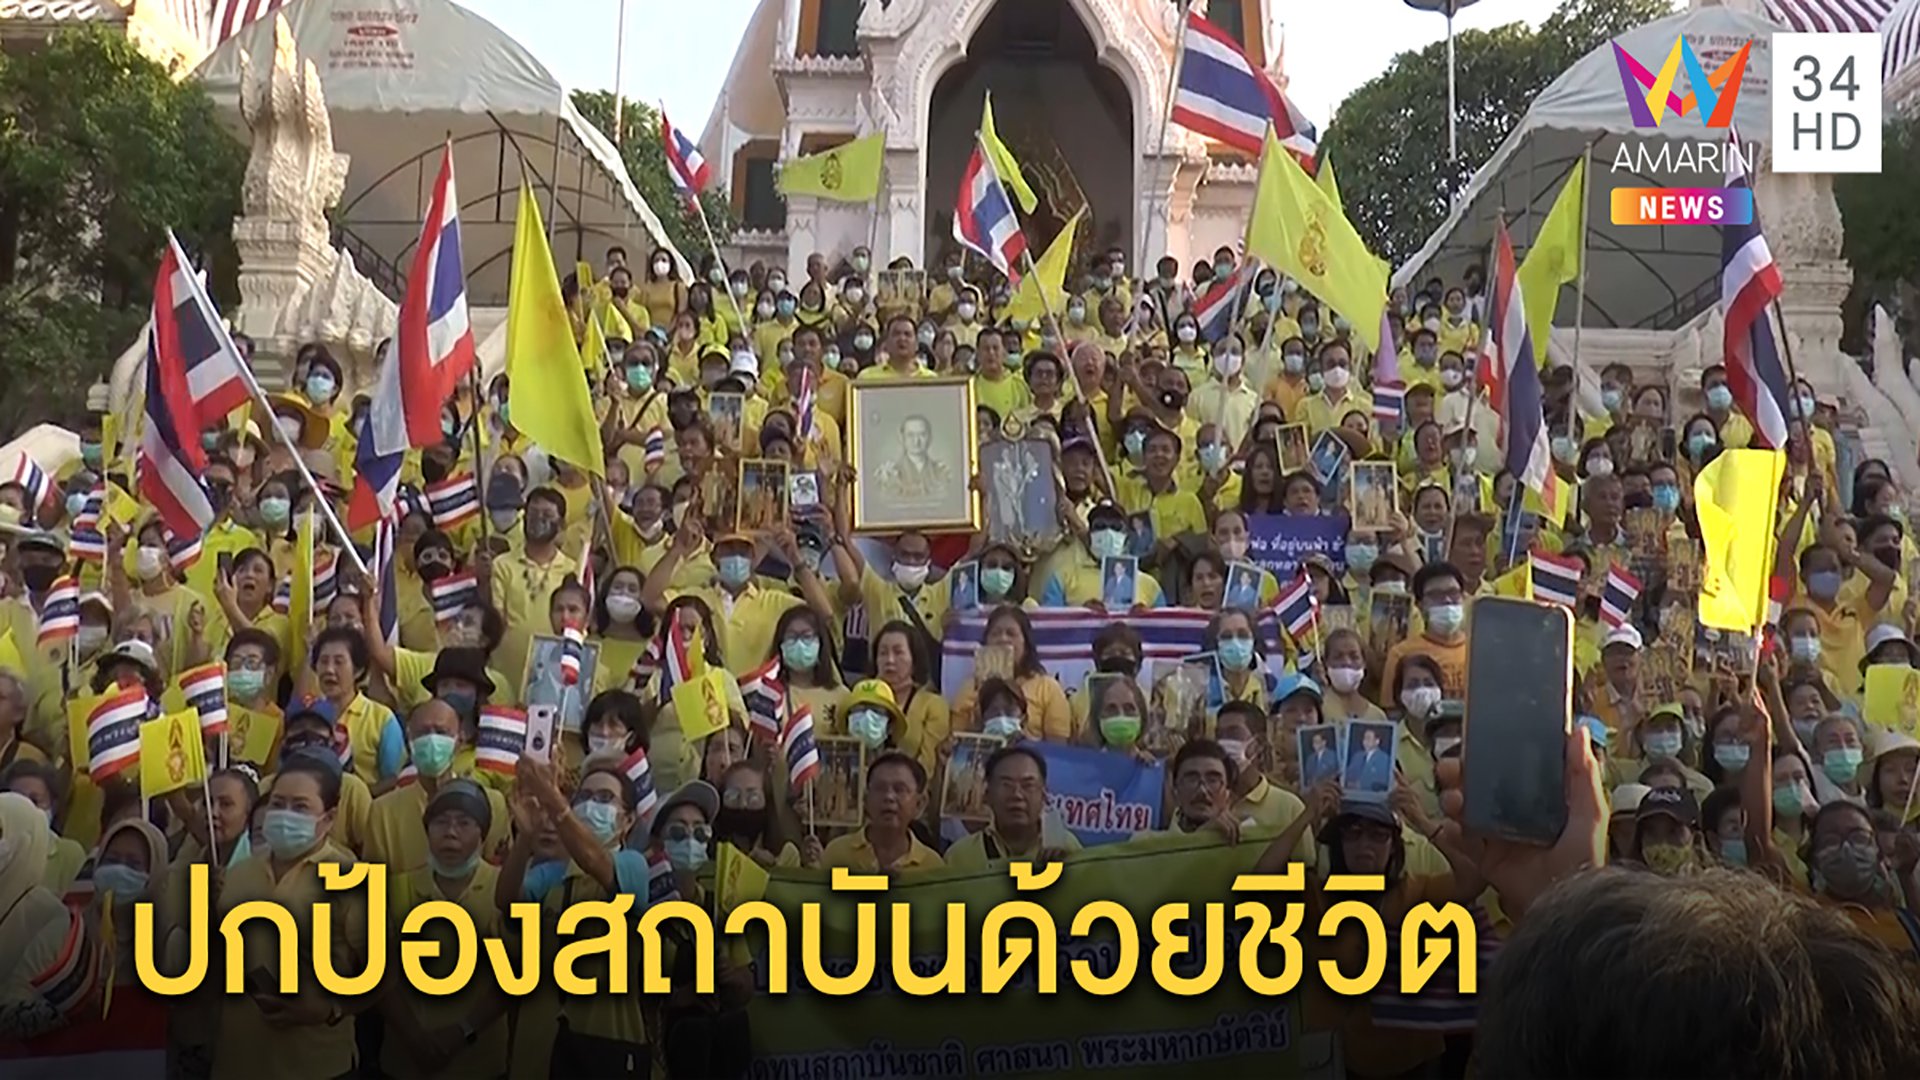 ทั่วไทยพร้อมใจใส่เสื้อเหลืองทั้งแผ่นดิน รวมพลังแสดงจุดยืน เดินขบวนป้องสถาบัน | ทุบโต๊ะข่าว | 24 ต.ค. 63 | AMARIN TVHD34